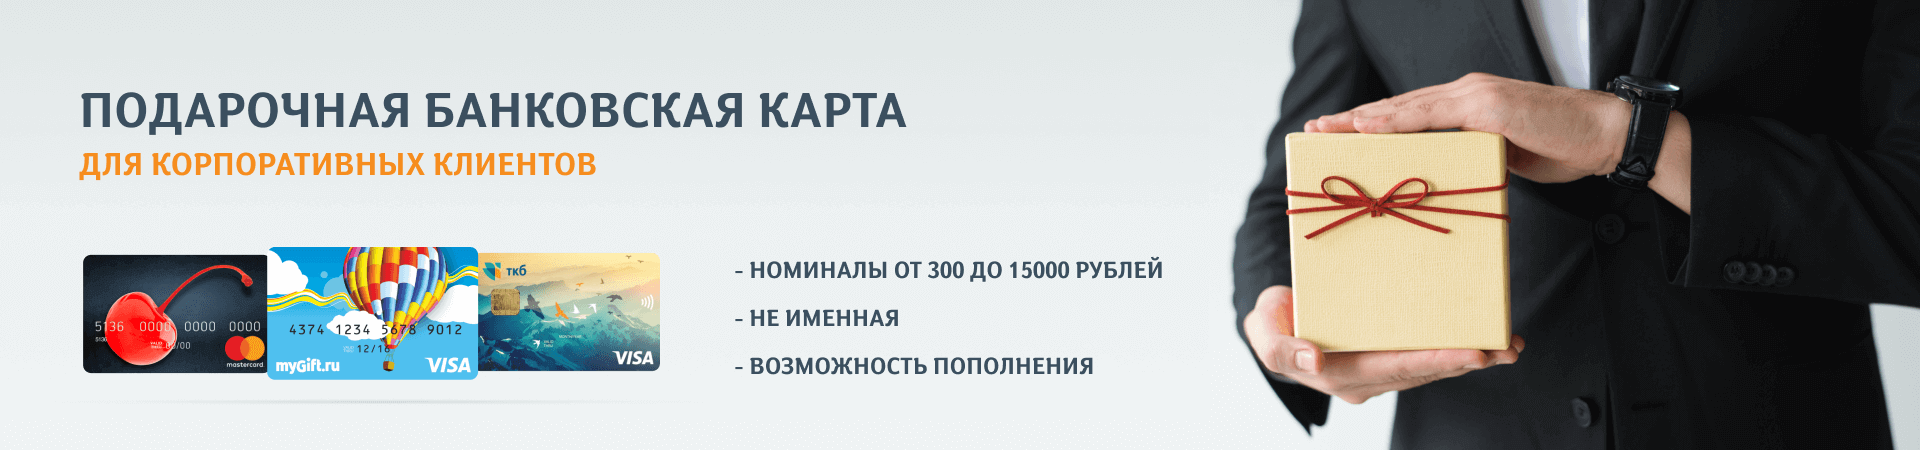 Https vpodarok ru login. Электронные сертификаты в подарок. Универсальная подарочная карта. Подарочный сертификат Озон. Подарочный сертификат Озон картинка.